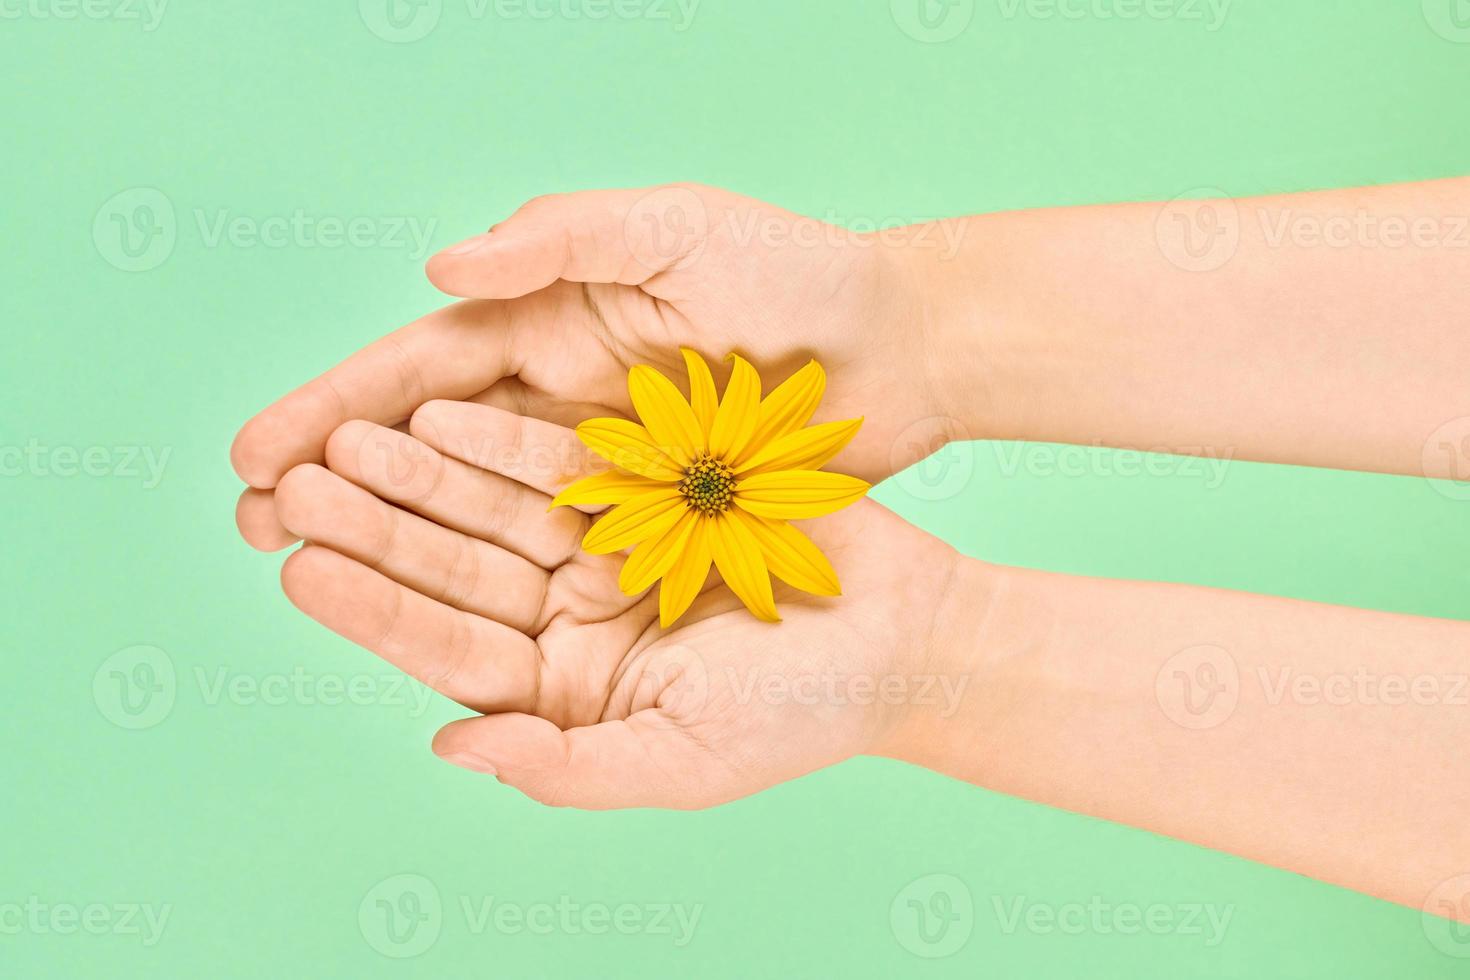 fleur jaune dans les paumes femelles, concept d'hygiène des mains et de soins cosmétiques, symbole de la nature pure photo